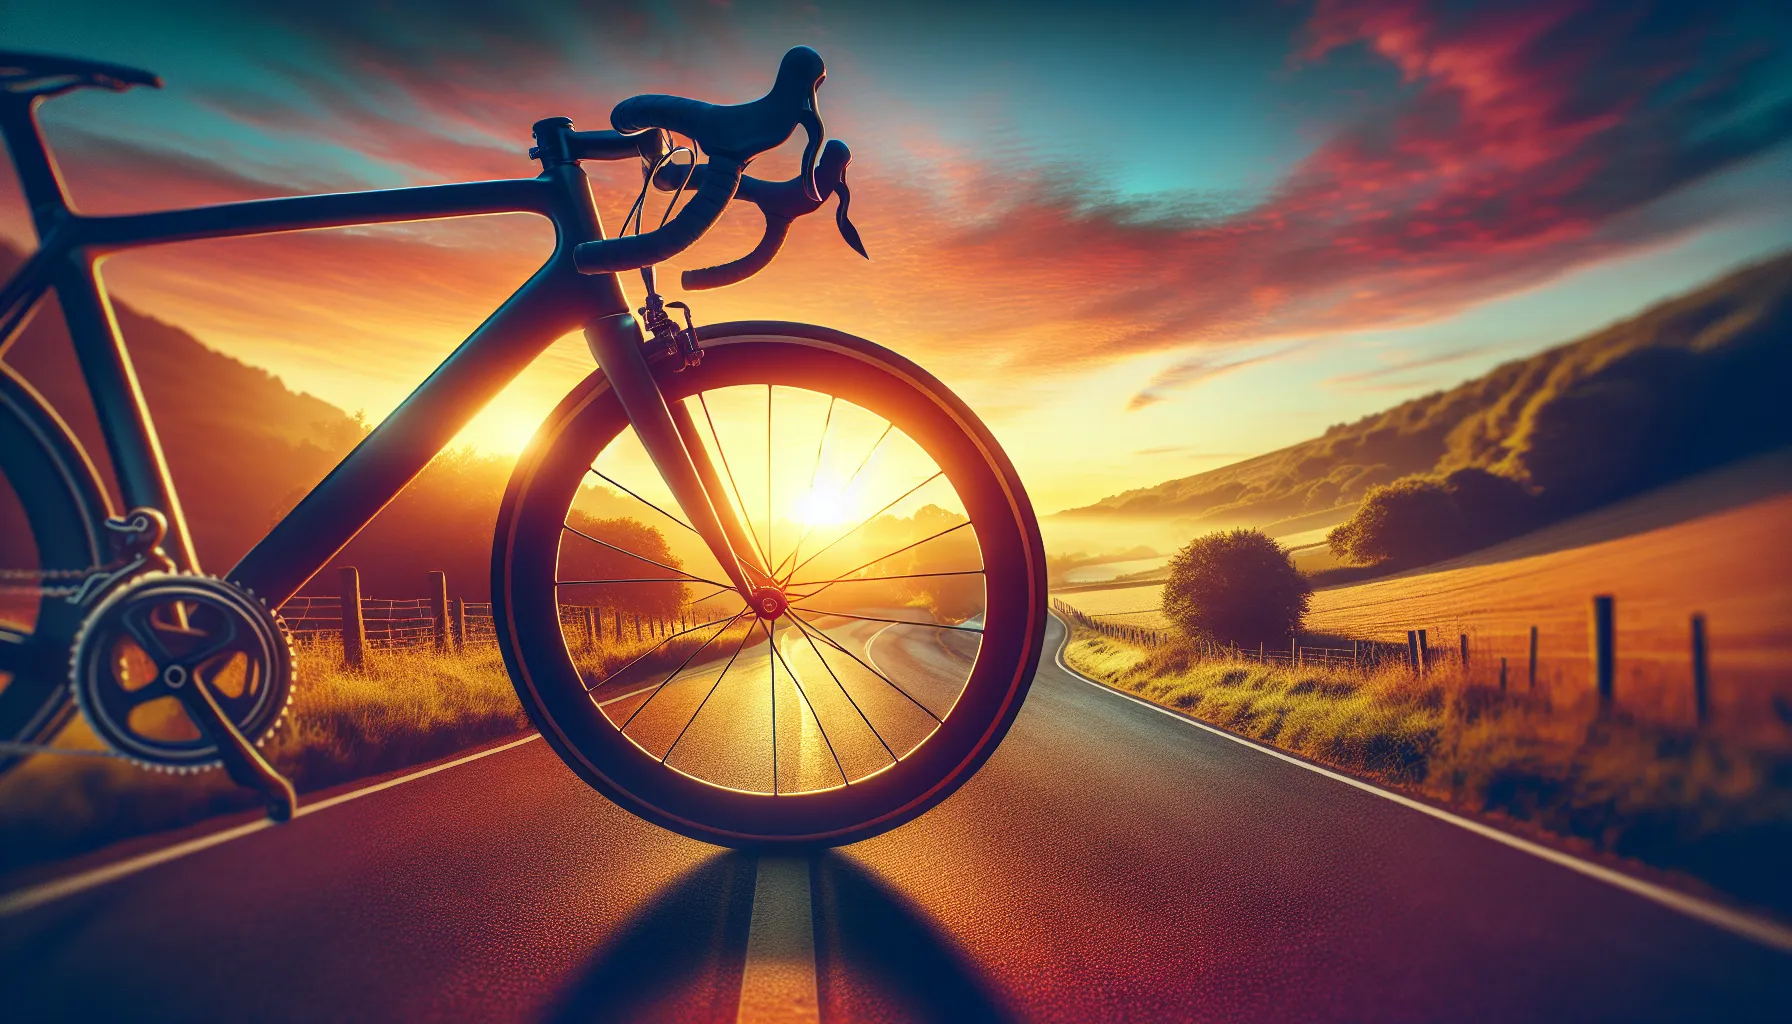 Manter a motivação em treinos de ciclismo pode ser desafiador, mas existem algumas estratégias que podem ajudar a manter o foco e o entusiasmo. Aqui estão algumas dicas:

1. Defina metas claras: Estabeleça metas realistas e específicas para seus treinos de ciclismo. Isso ajudará a manter o foco e a motivação ao longo do tempo.

